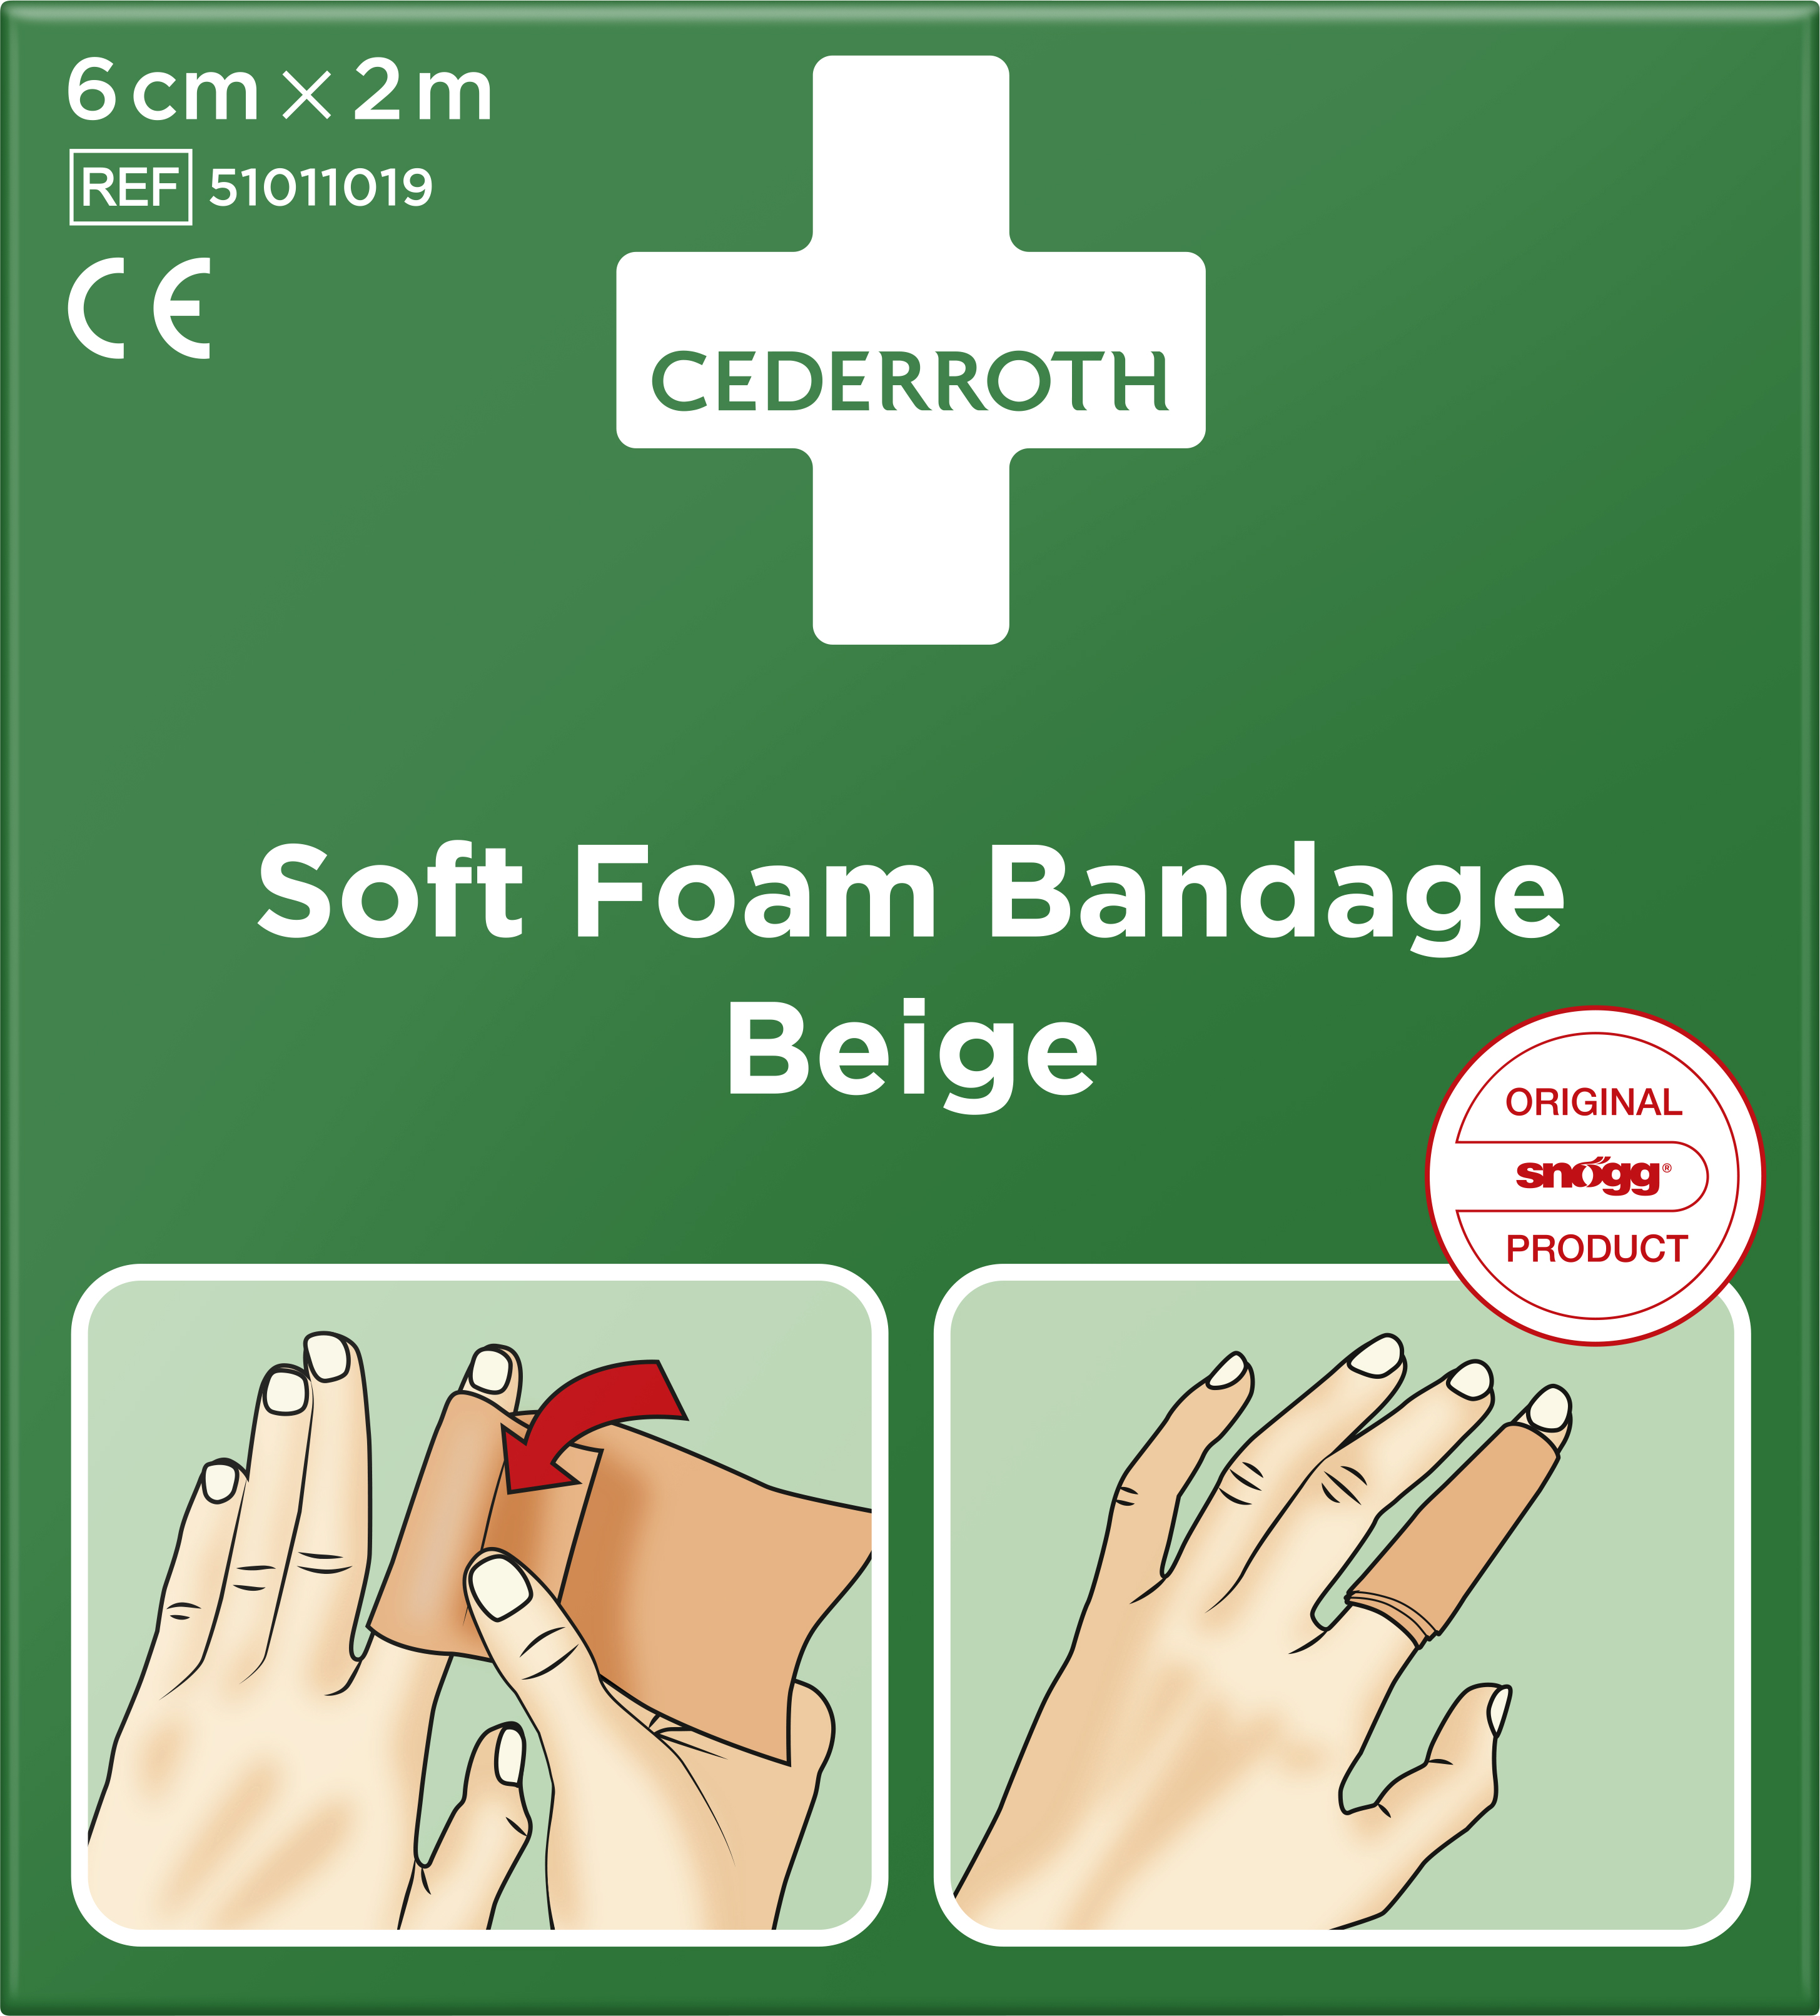 Cederroth Soft Foam Bandage Beige 6cm x 2m